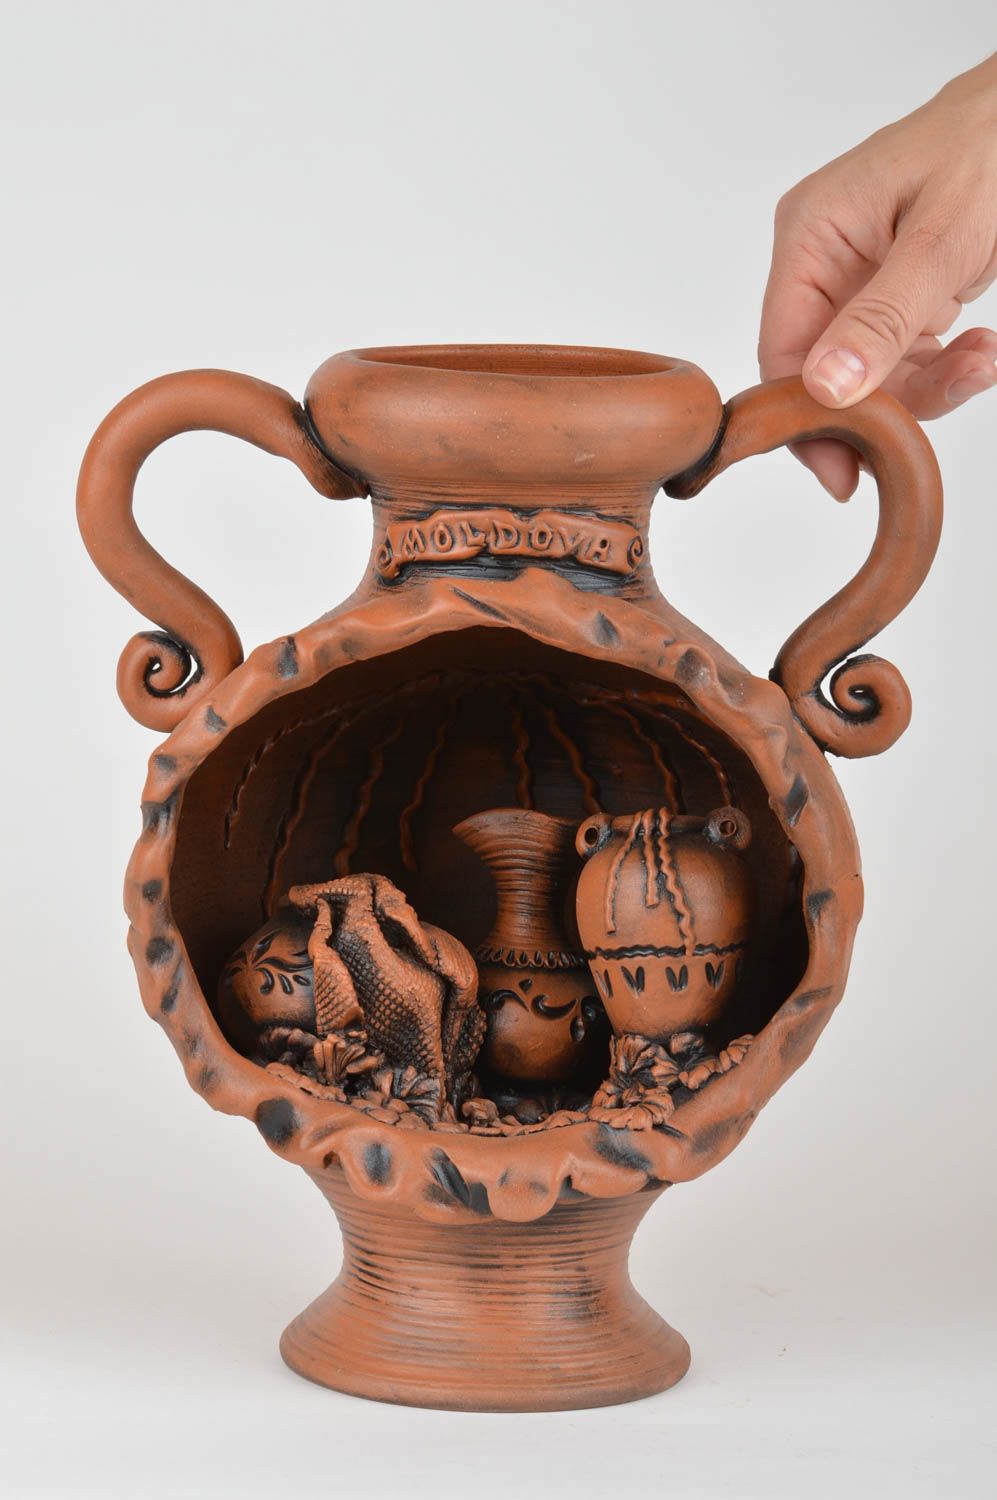 Оригинальная декоративная ваза для дома из красной глины Винный подвал фото 3